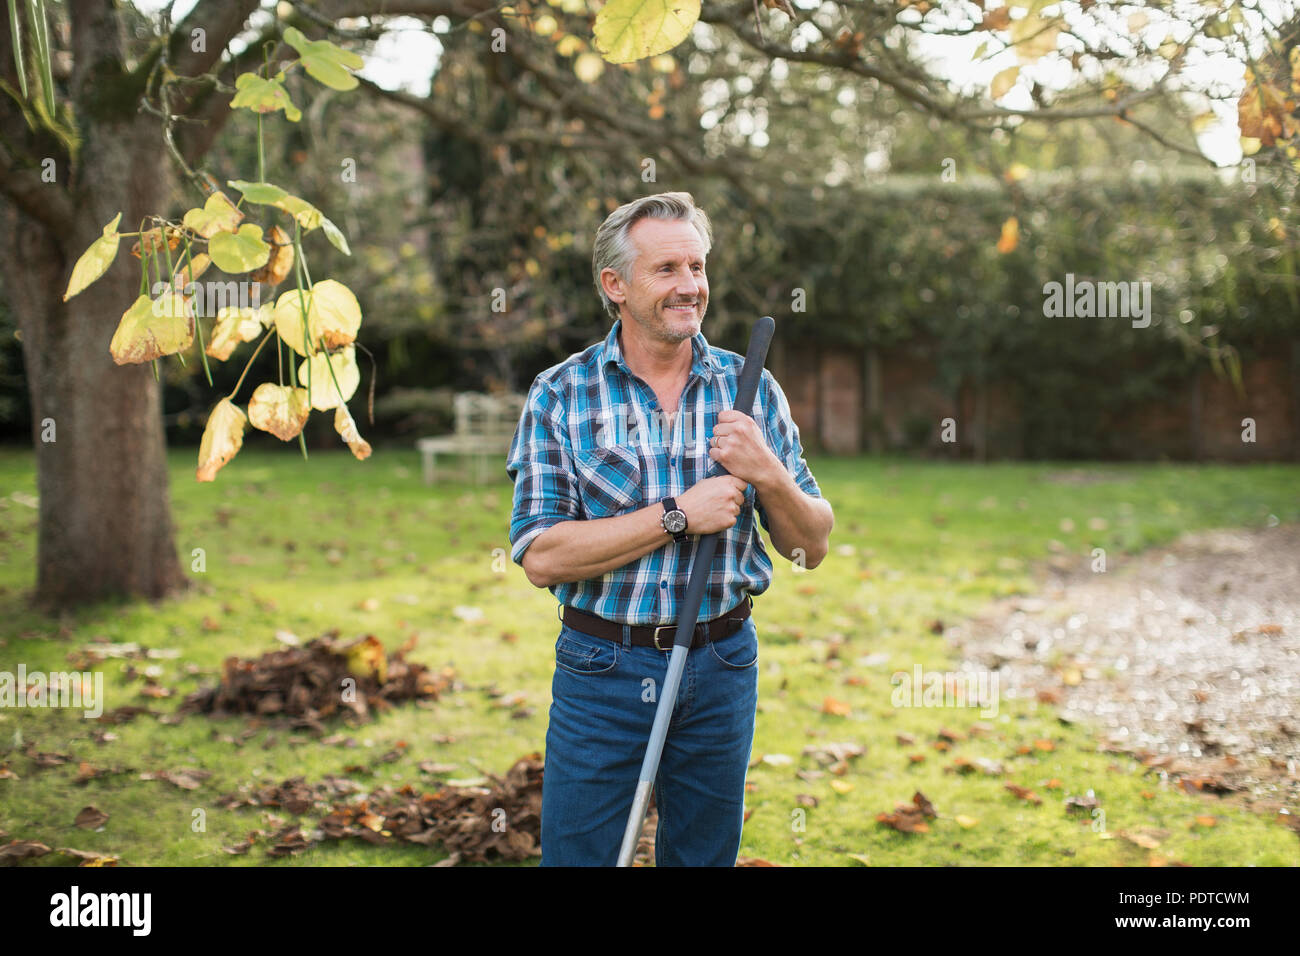 Smiling senior man raking autumn leaves in backyard Stock Photo